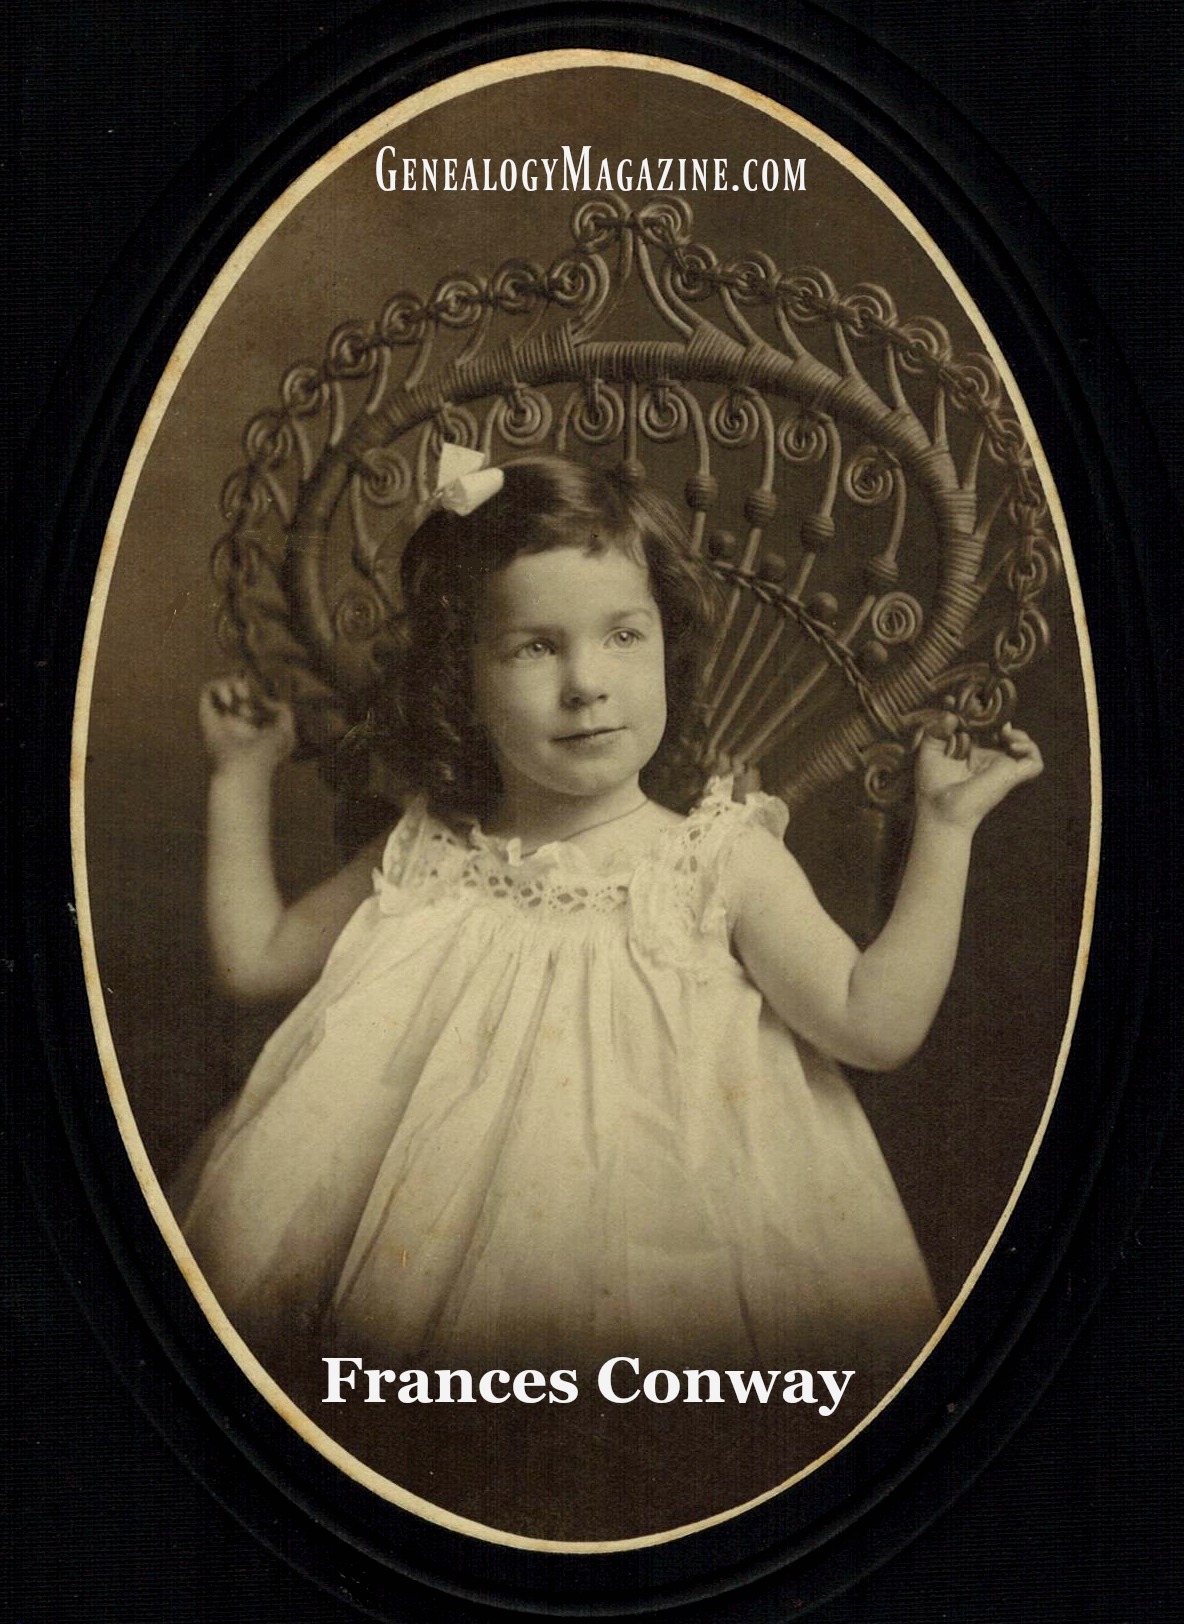 Frances Conway